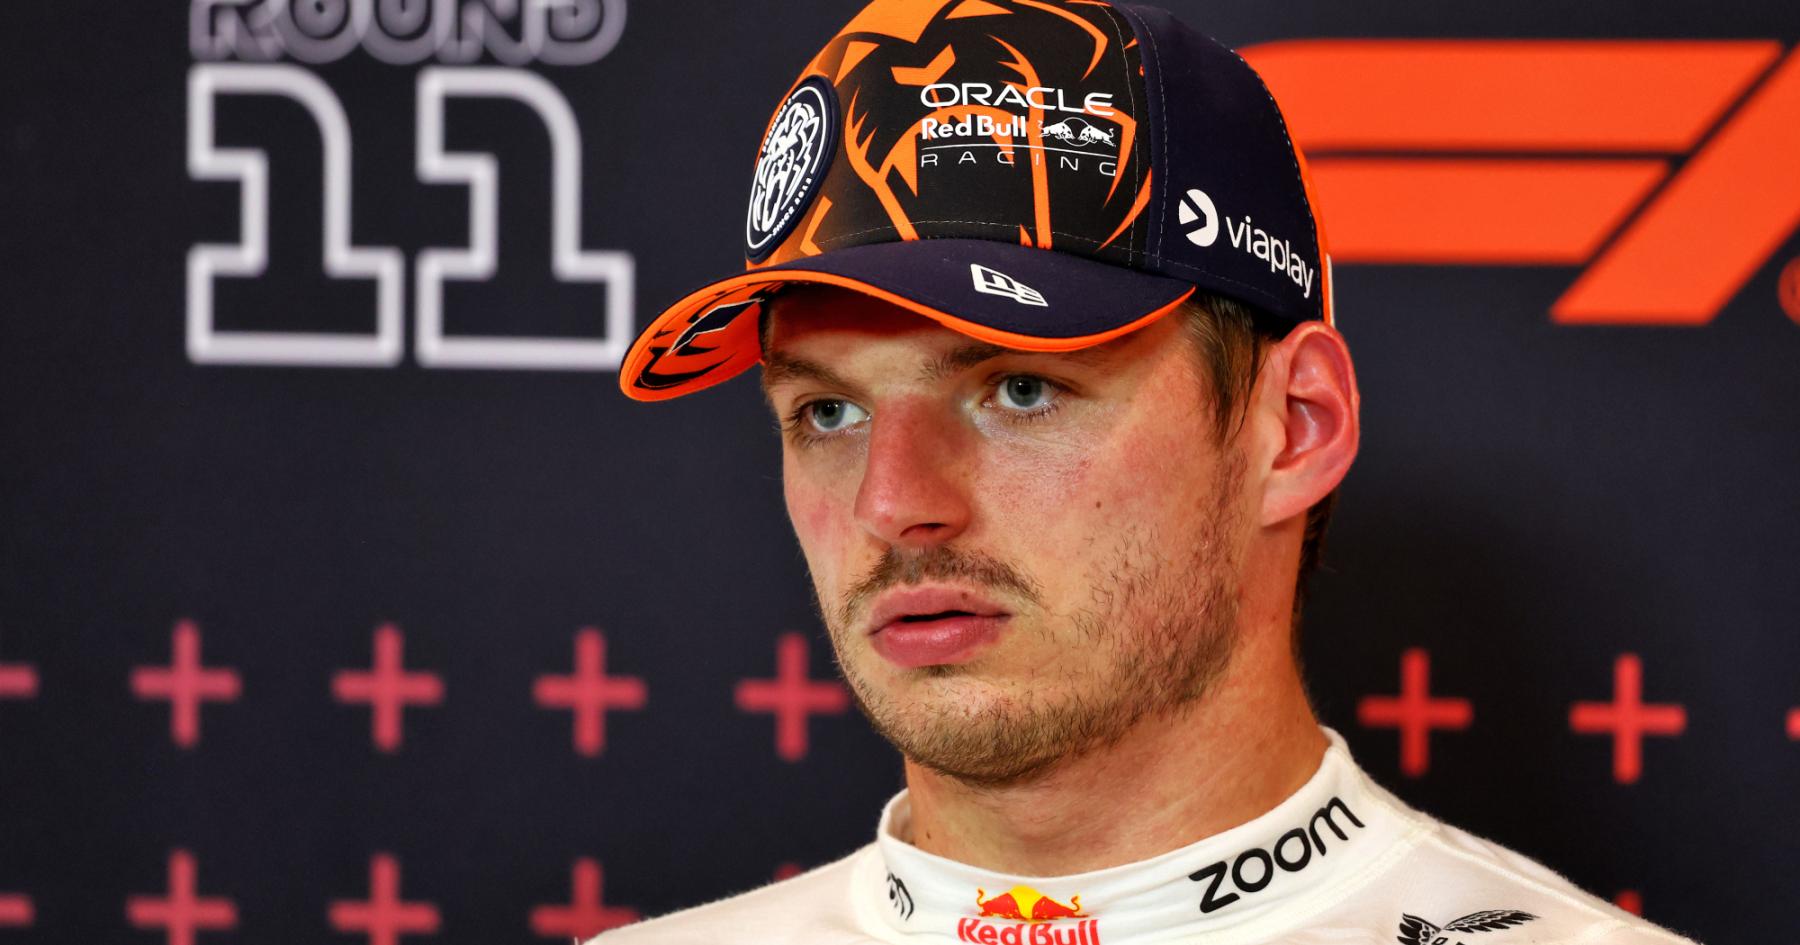 Will Verstappen's Pole Position Streak End in Austria?